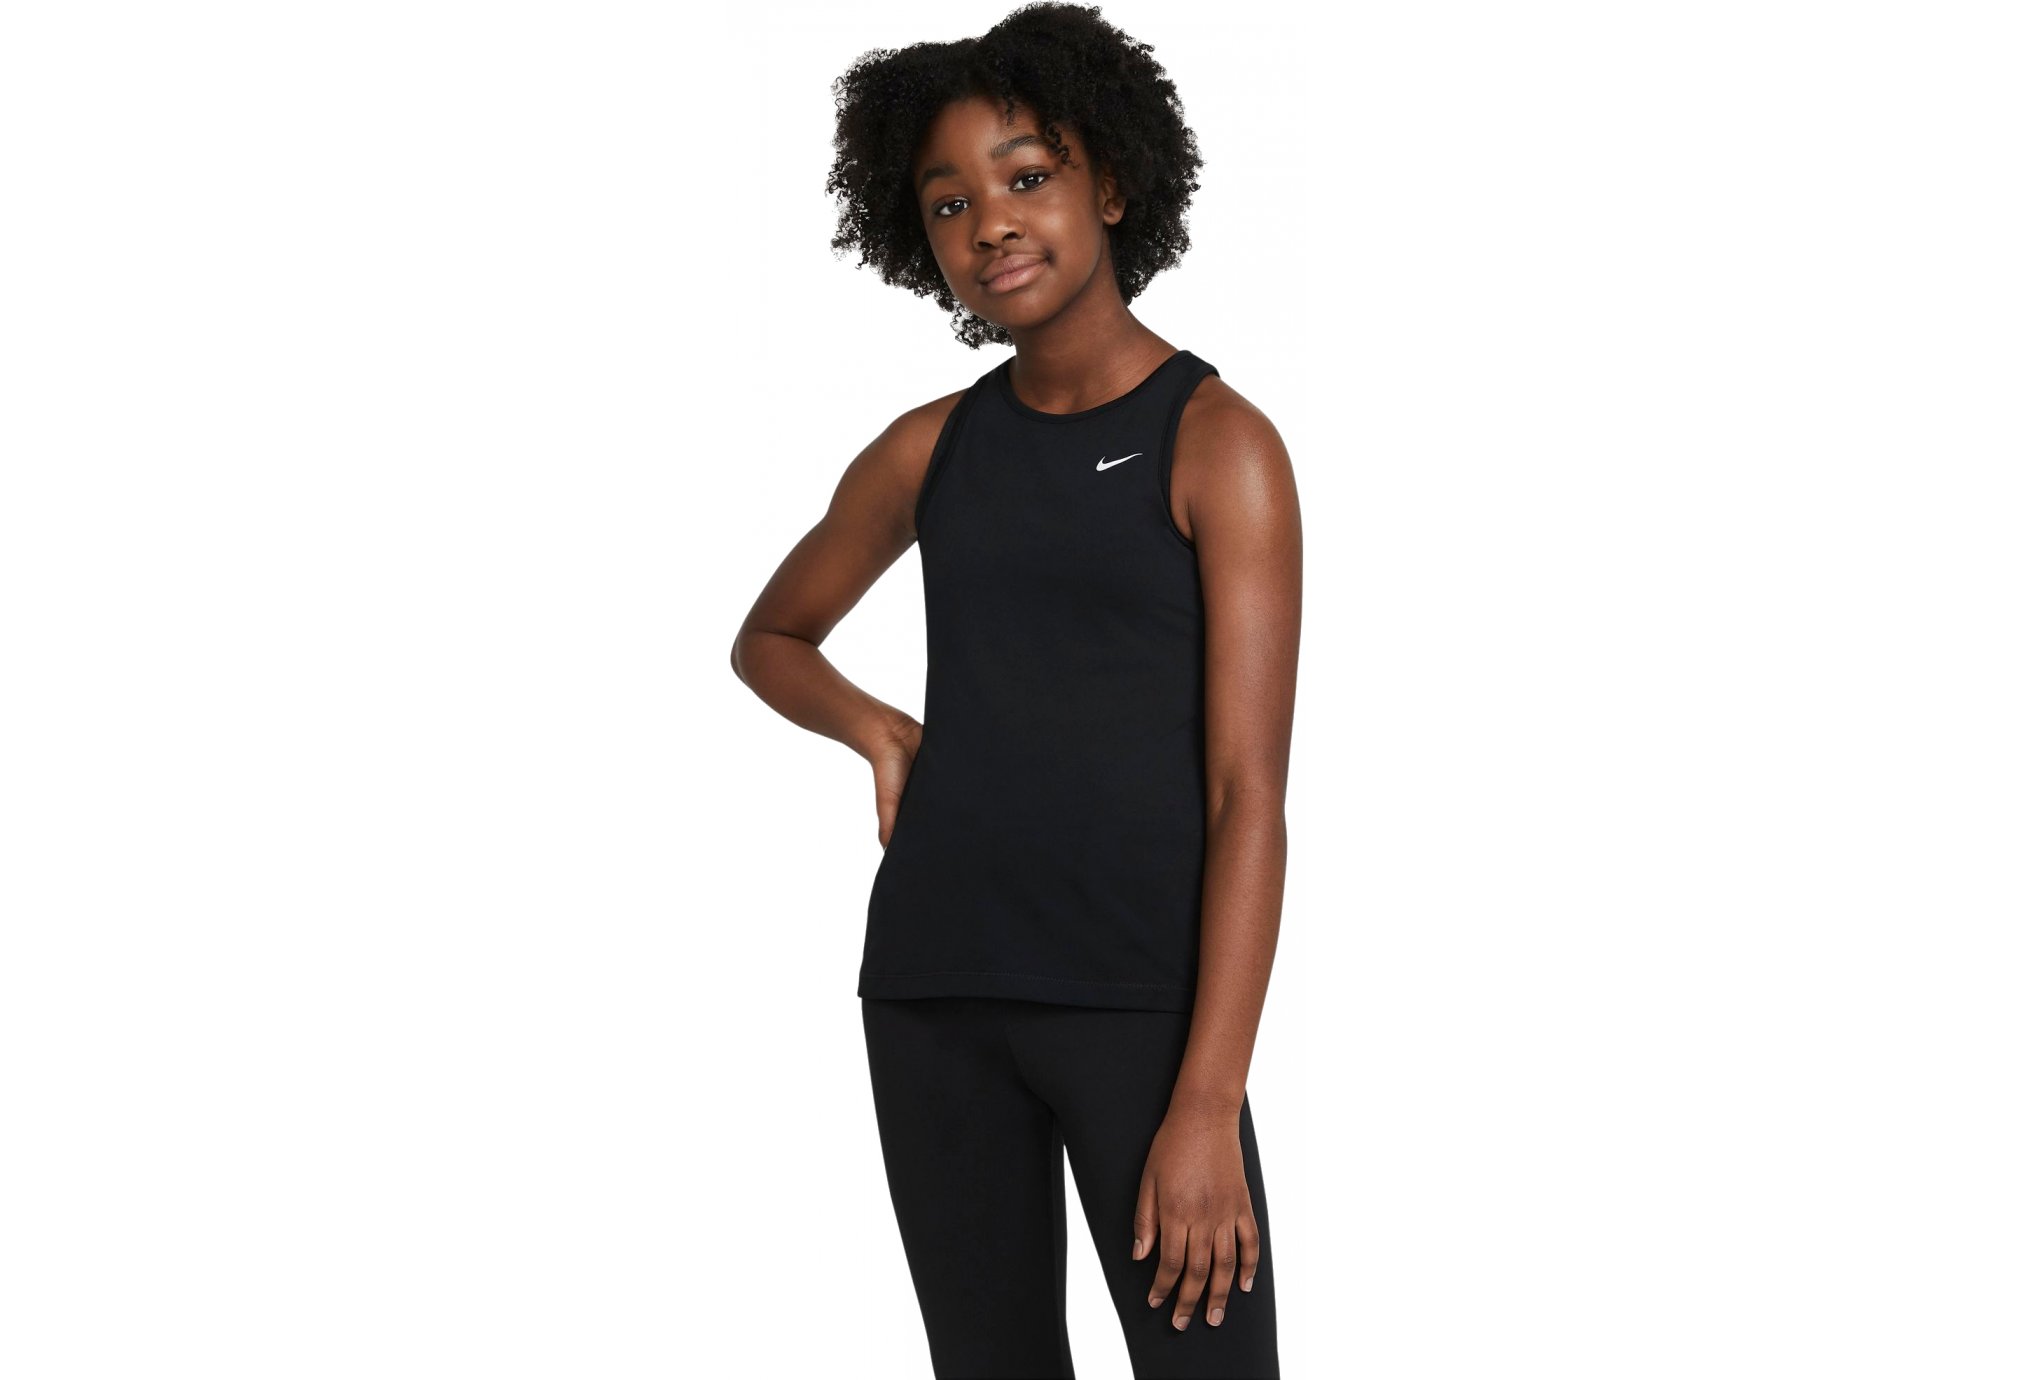 Nike Pro Fille vêtement running femme